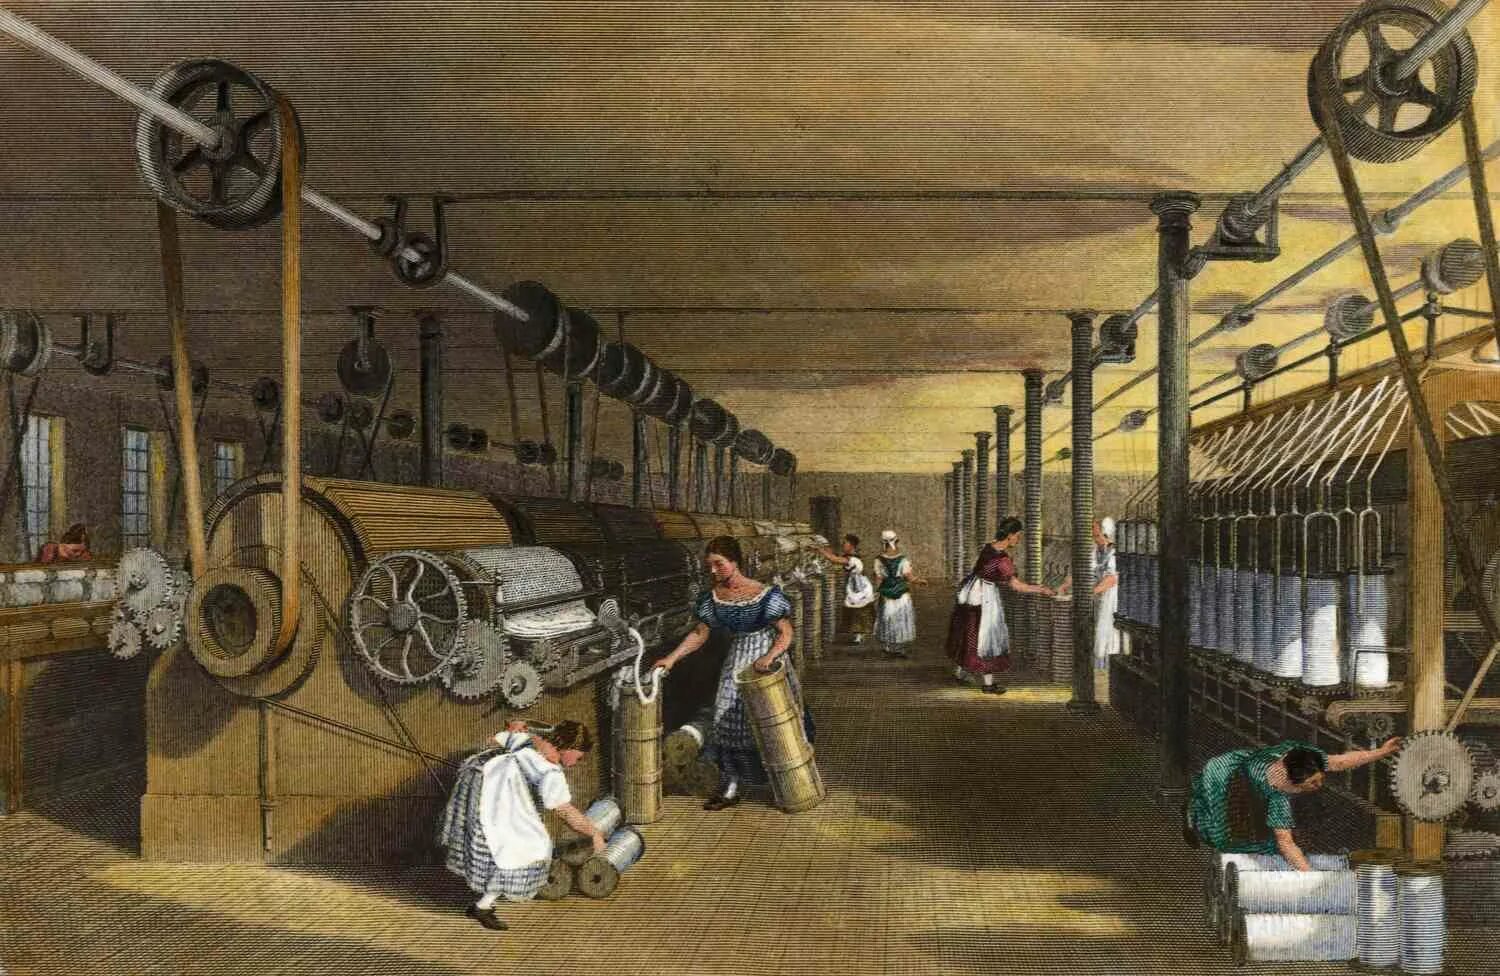 Рабочие нового времени. Ткацкая фабрика в Англии 18 вае. Ткацкий фабрики в Англии 18 века. Англия 18 век Индустриальная революция. Промышленный переворот 19 век.